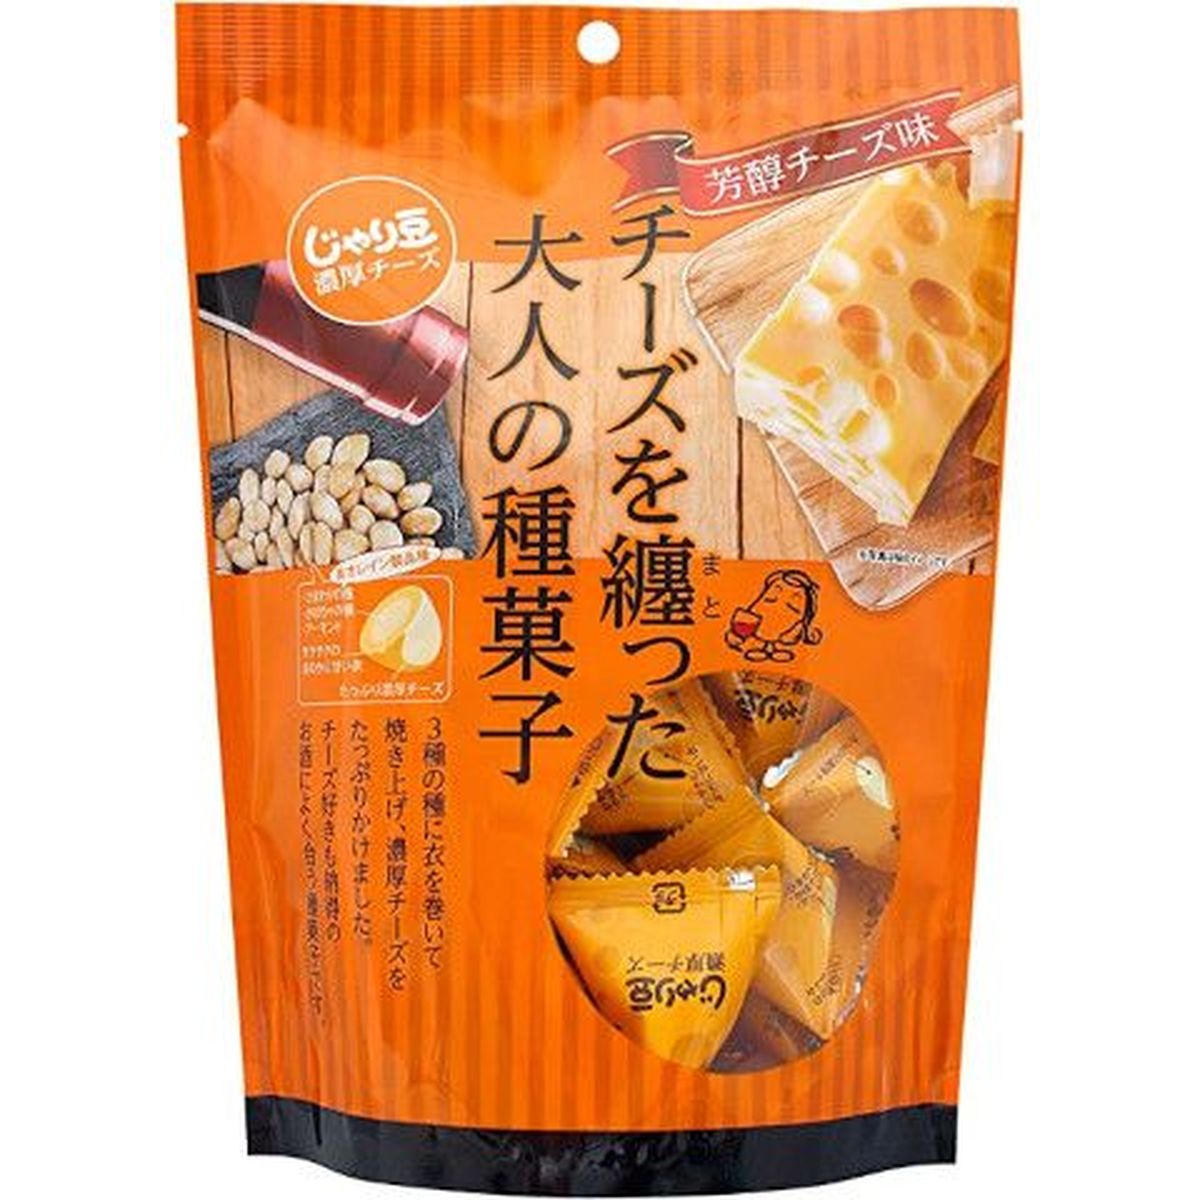 【20個入リ】トーノー ジャリ豆 濃厚チーズ味 280g